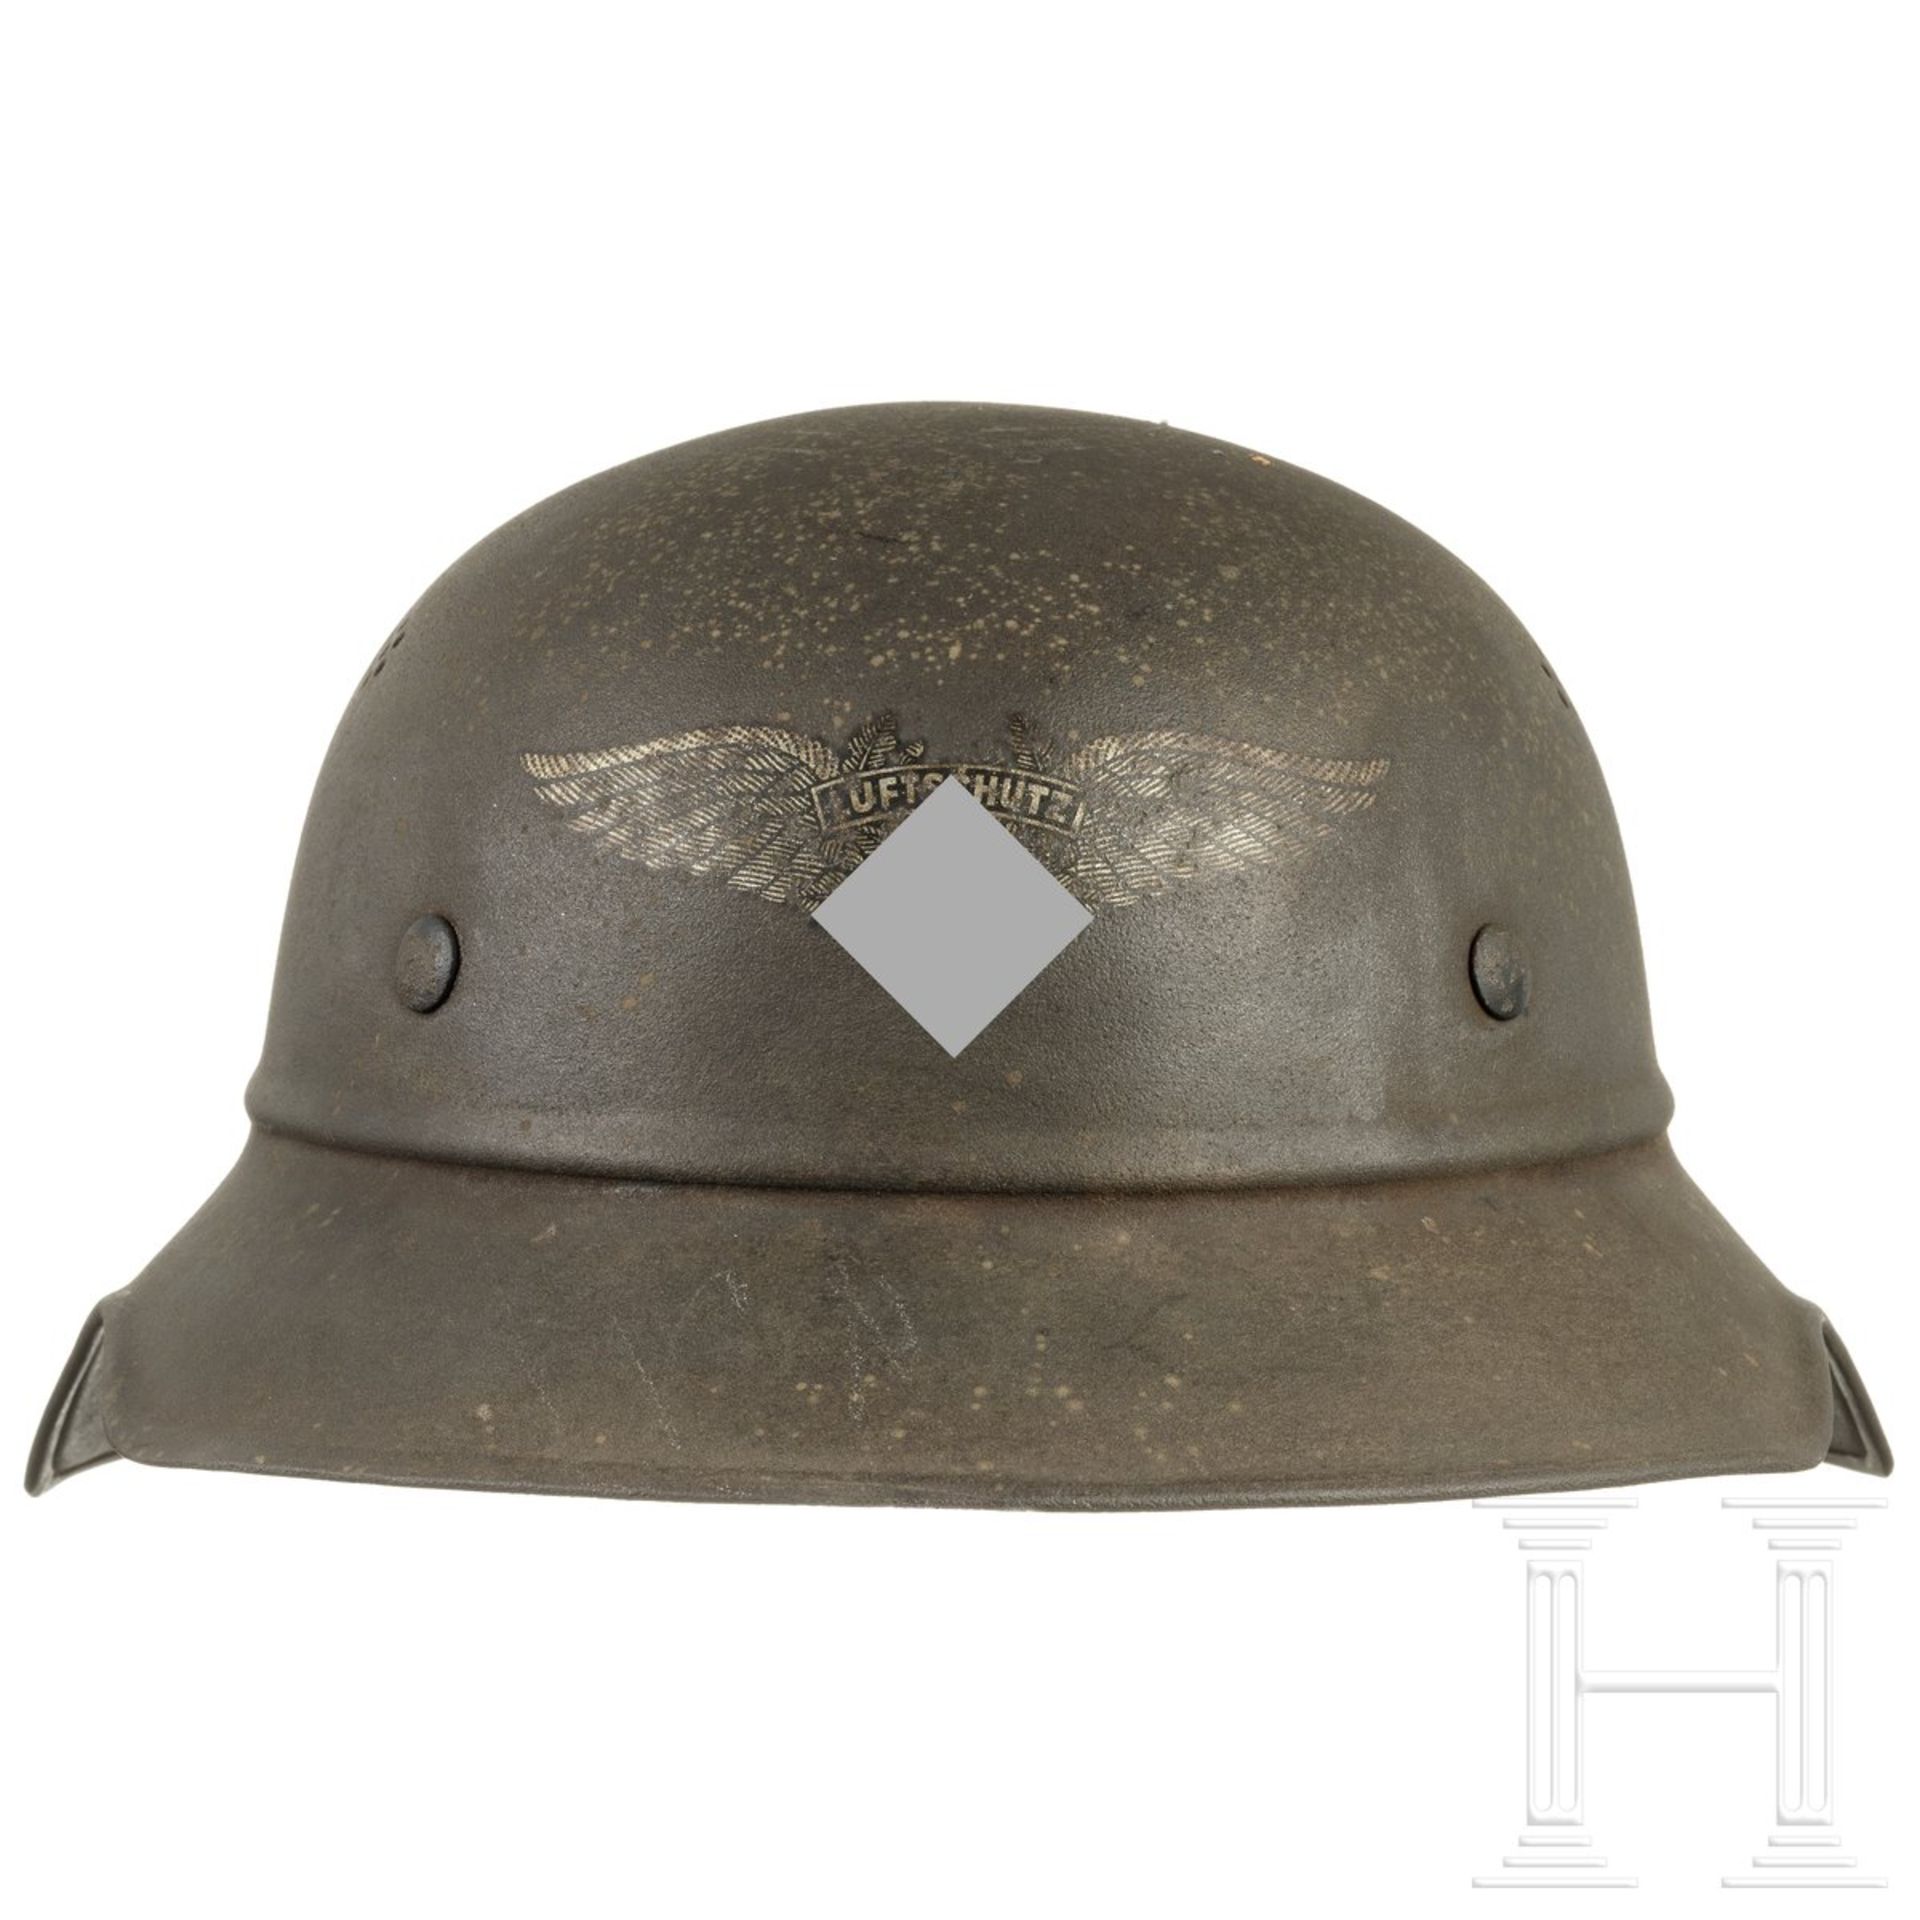 Stahlhelm "Gladiator" für Luftschutz, deutsch, um 1940 - Image 3 of 5